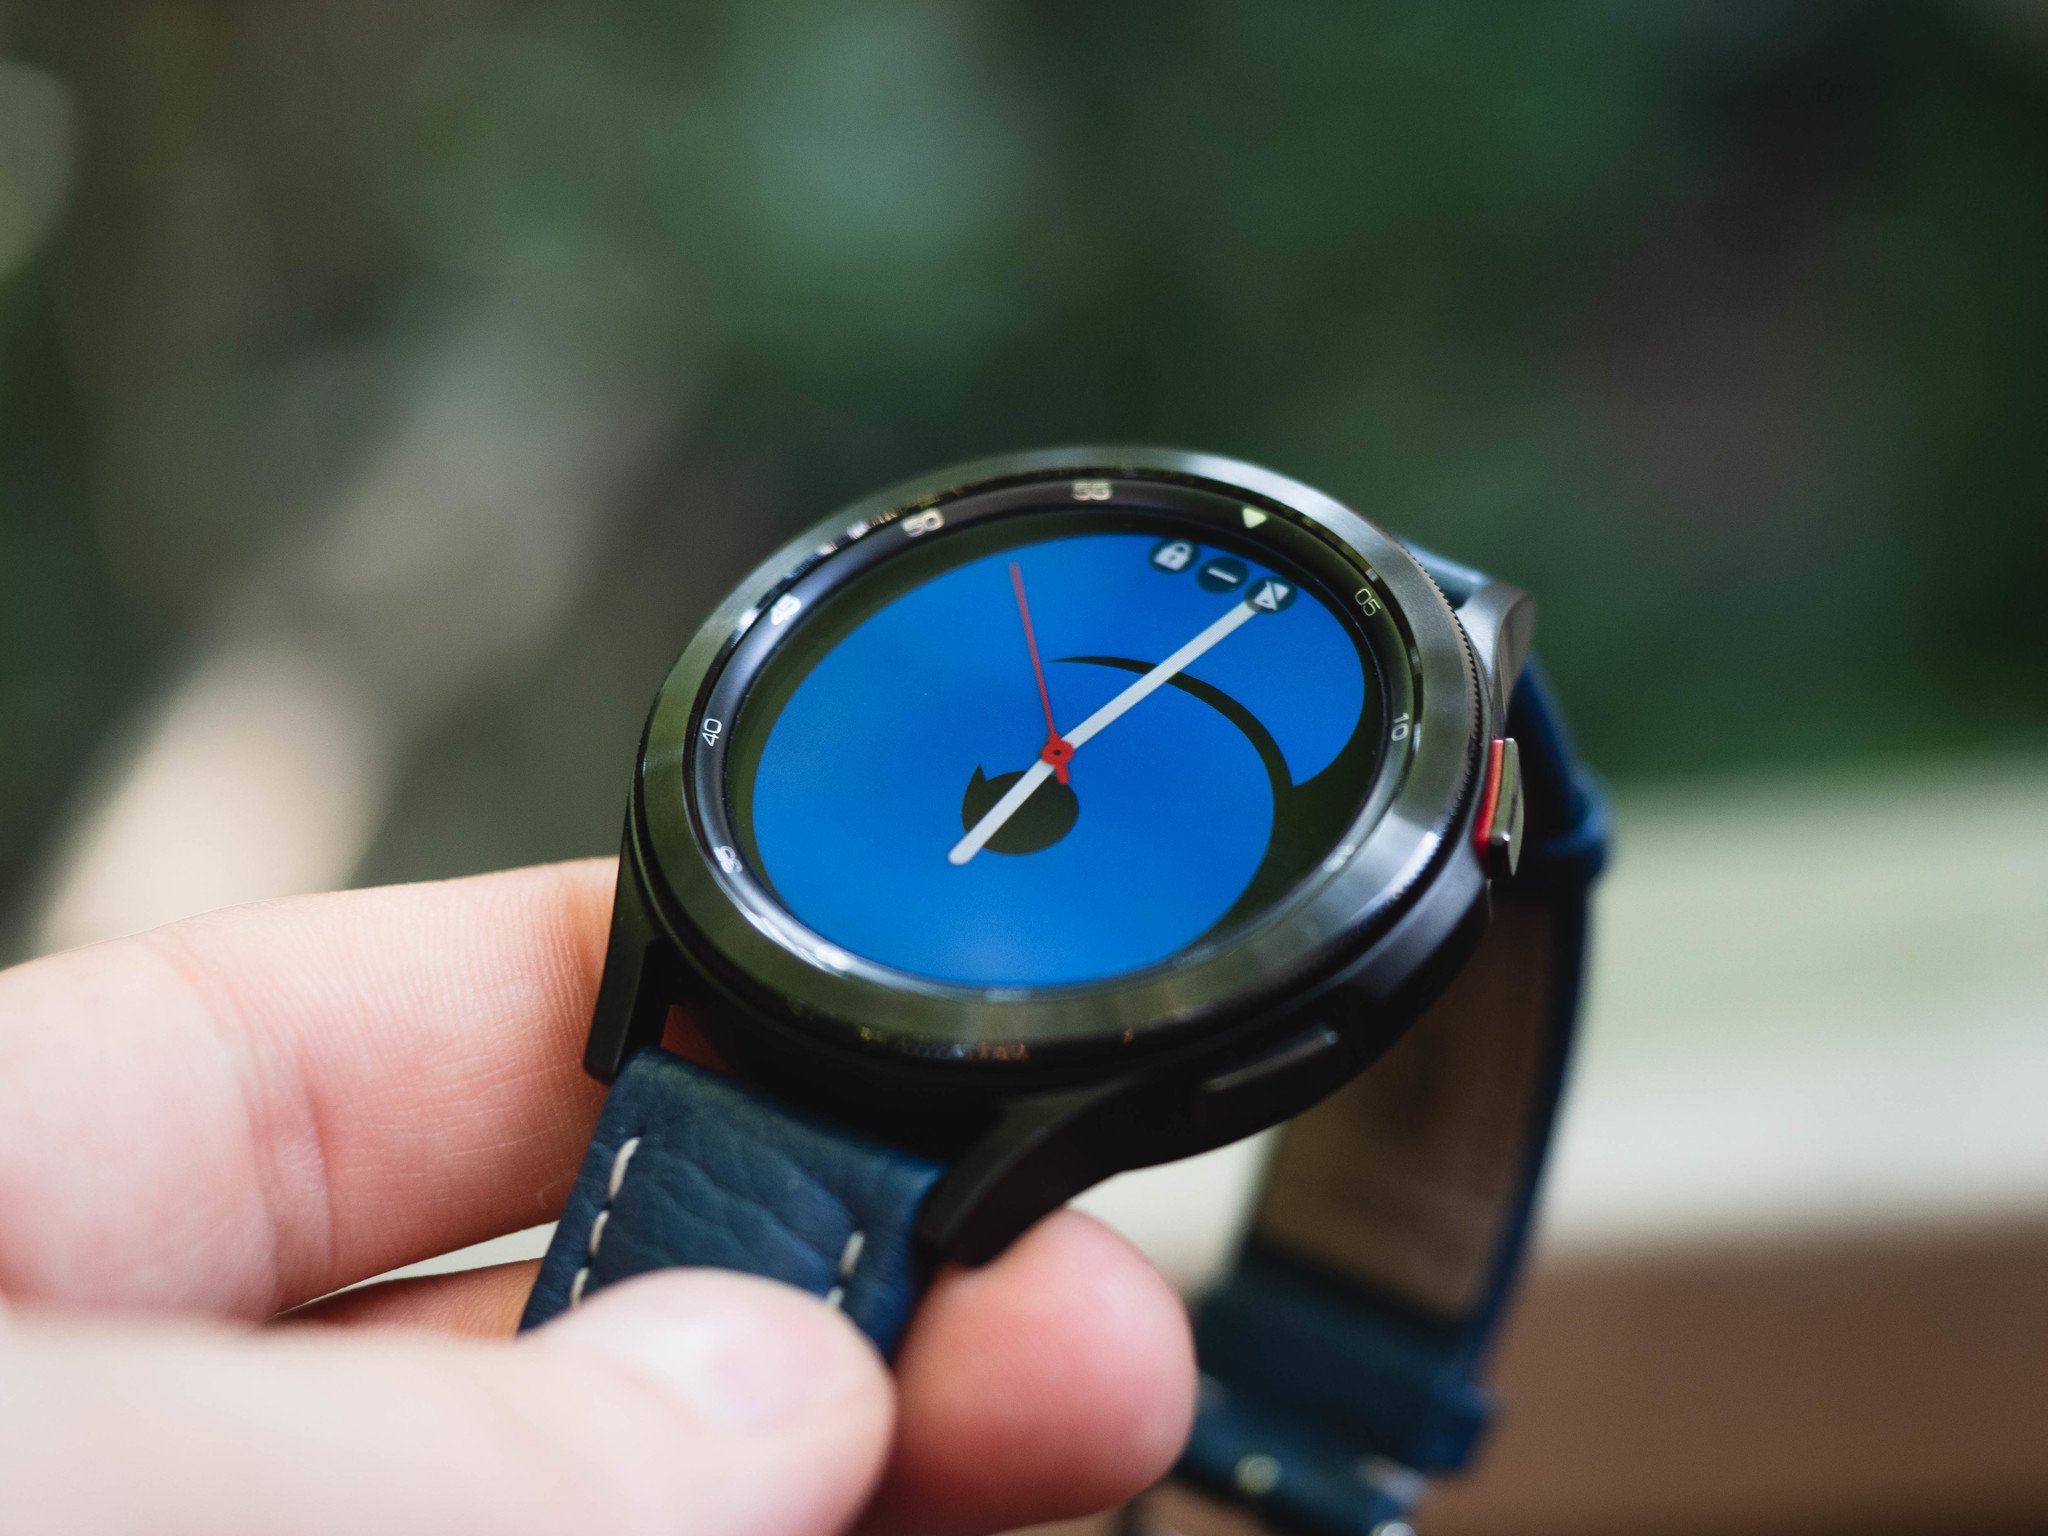 Best Samsung watch 2021